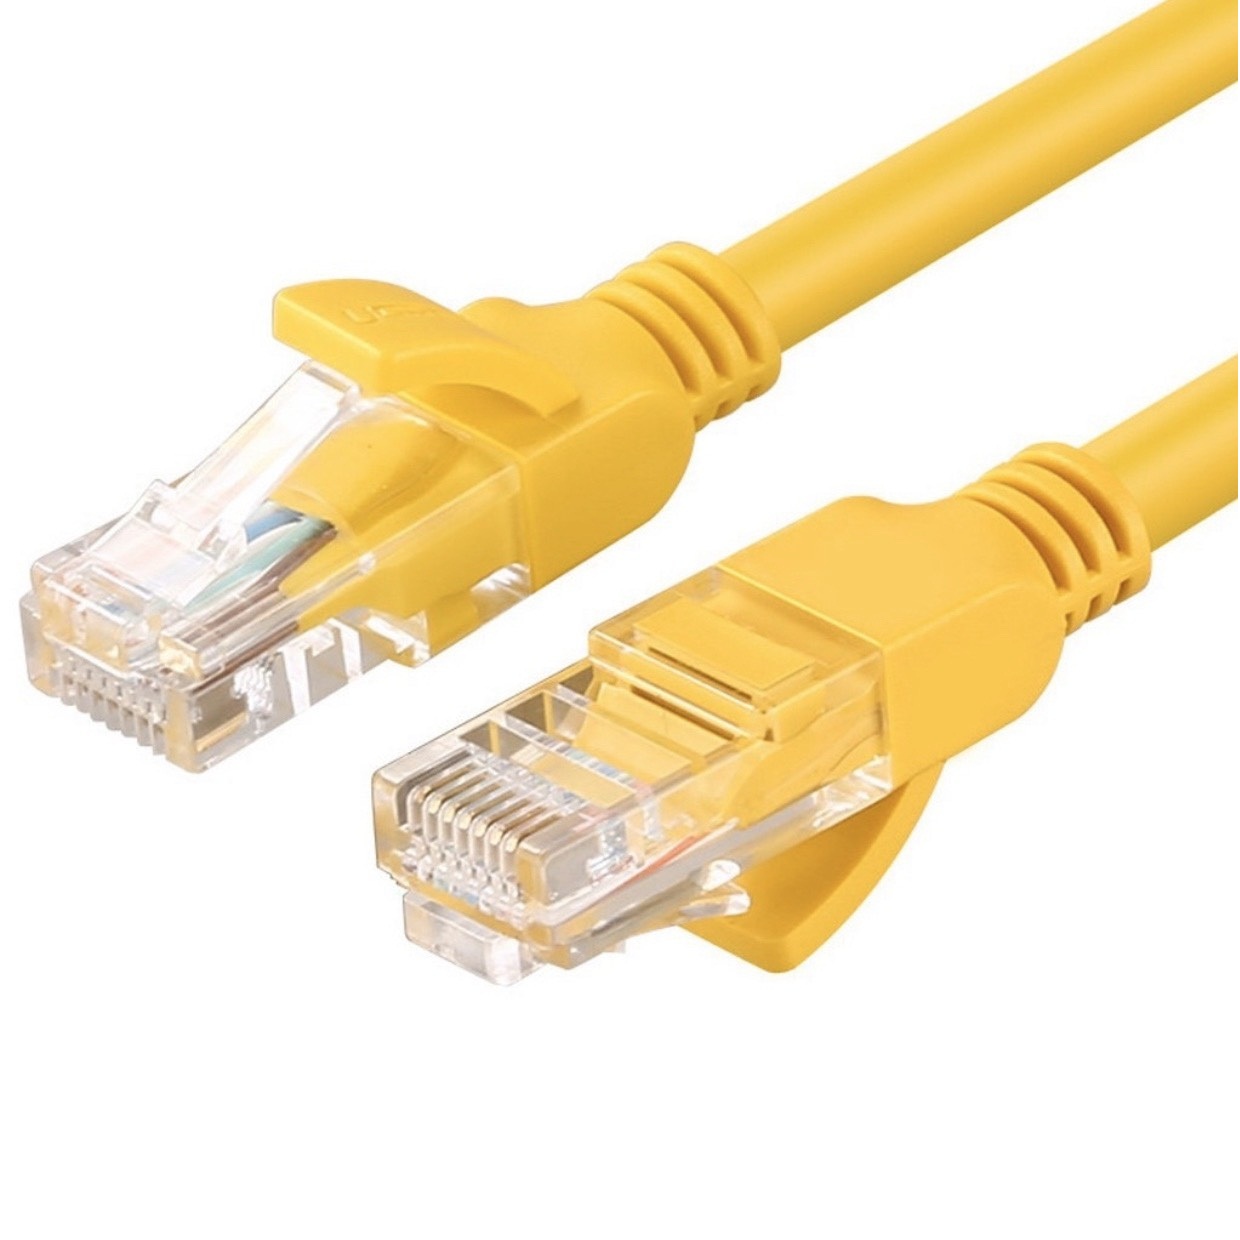 Cáp mạng internet/mạng LAN Cat 6E 5m 2 đầu bấm sẵn